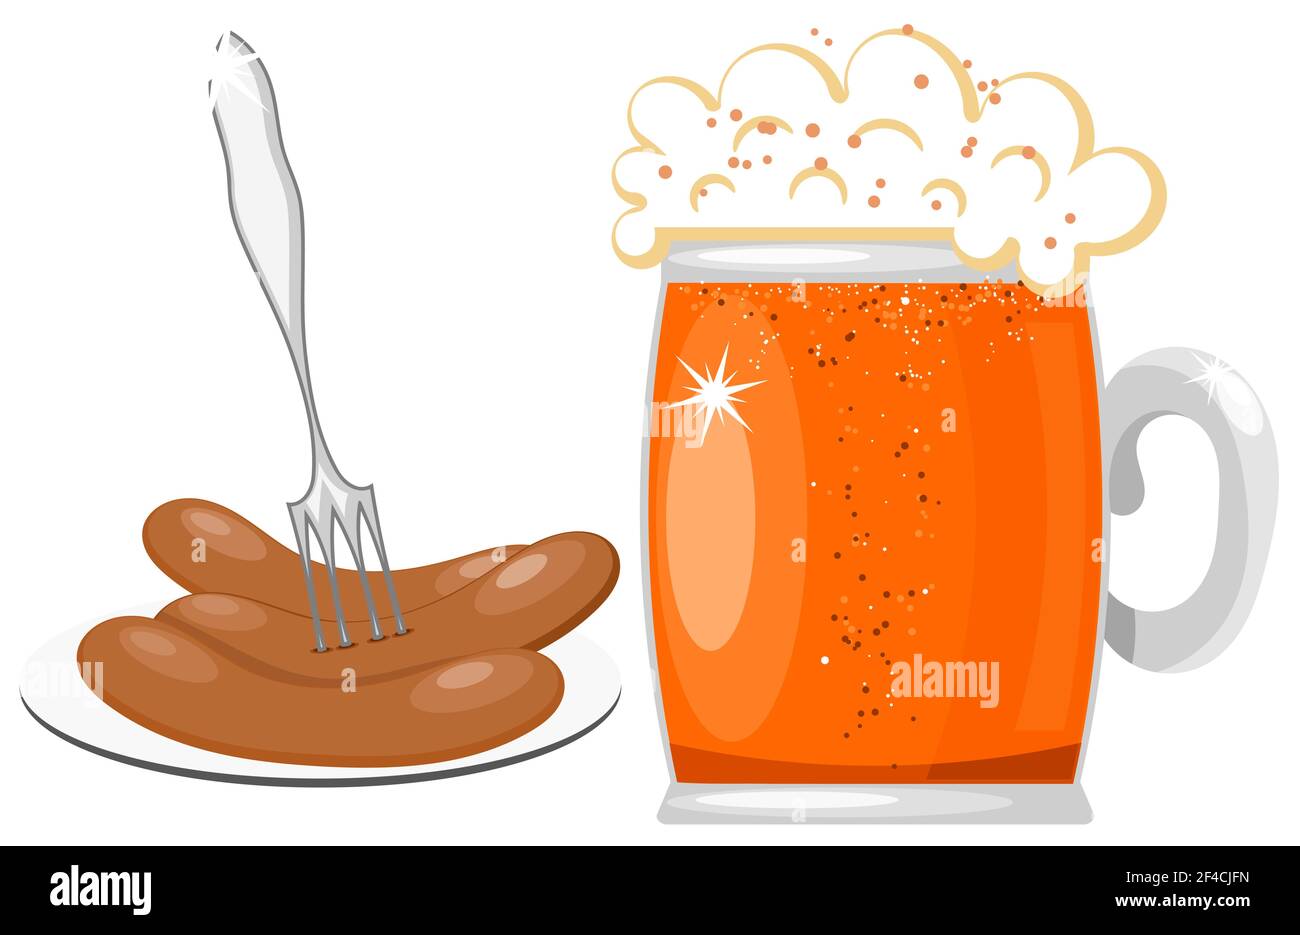 Vektor-Illustration von einem Glas Becher Bier mit Schaum und einem Teller mit Wurst und Gabel. Isoliertes Lebensmittelobjekt. Cartoon Bier und Würstchen Stock Vektor